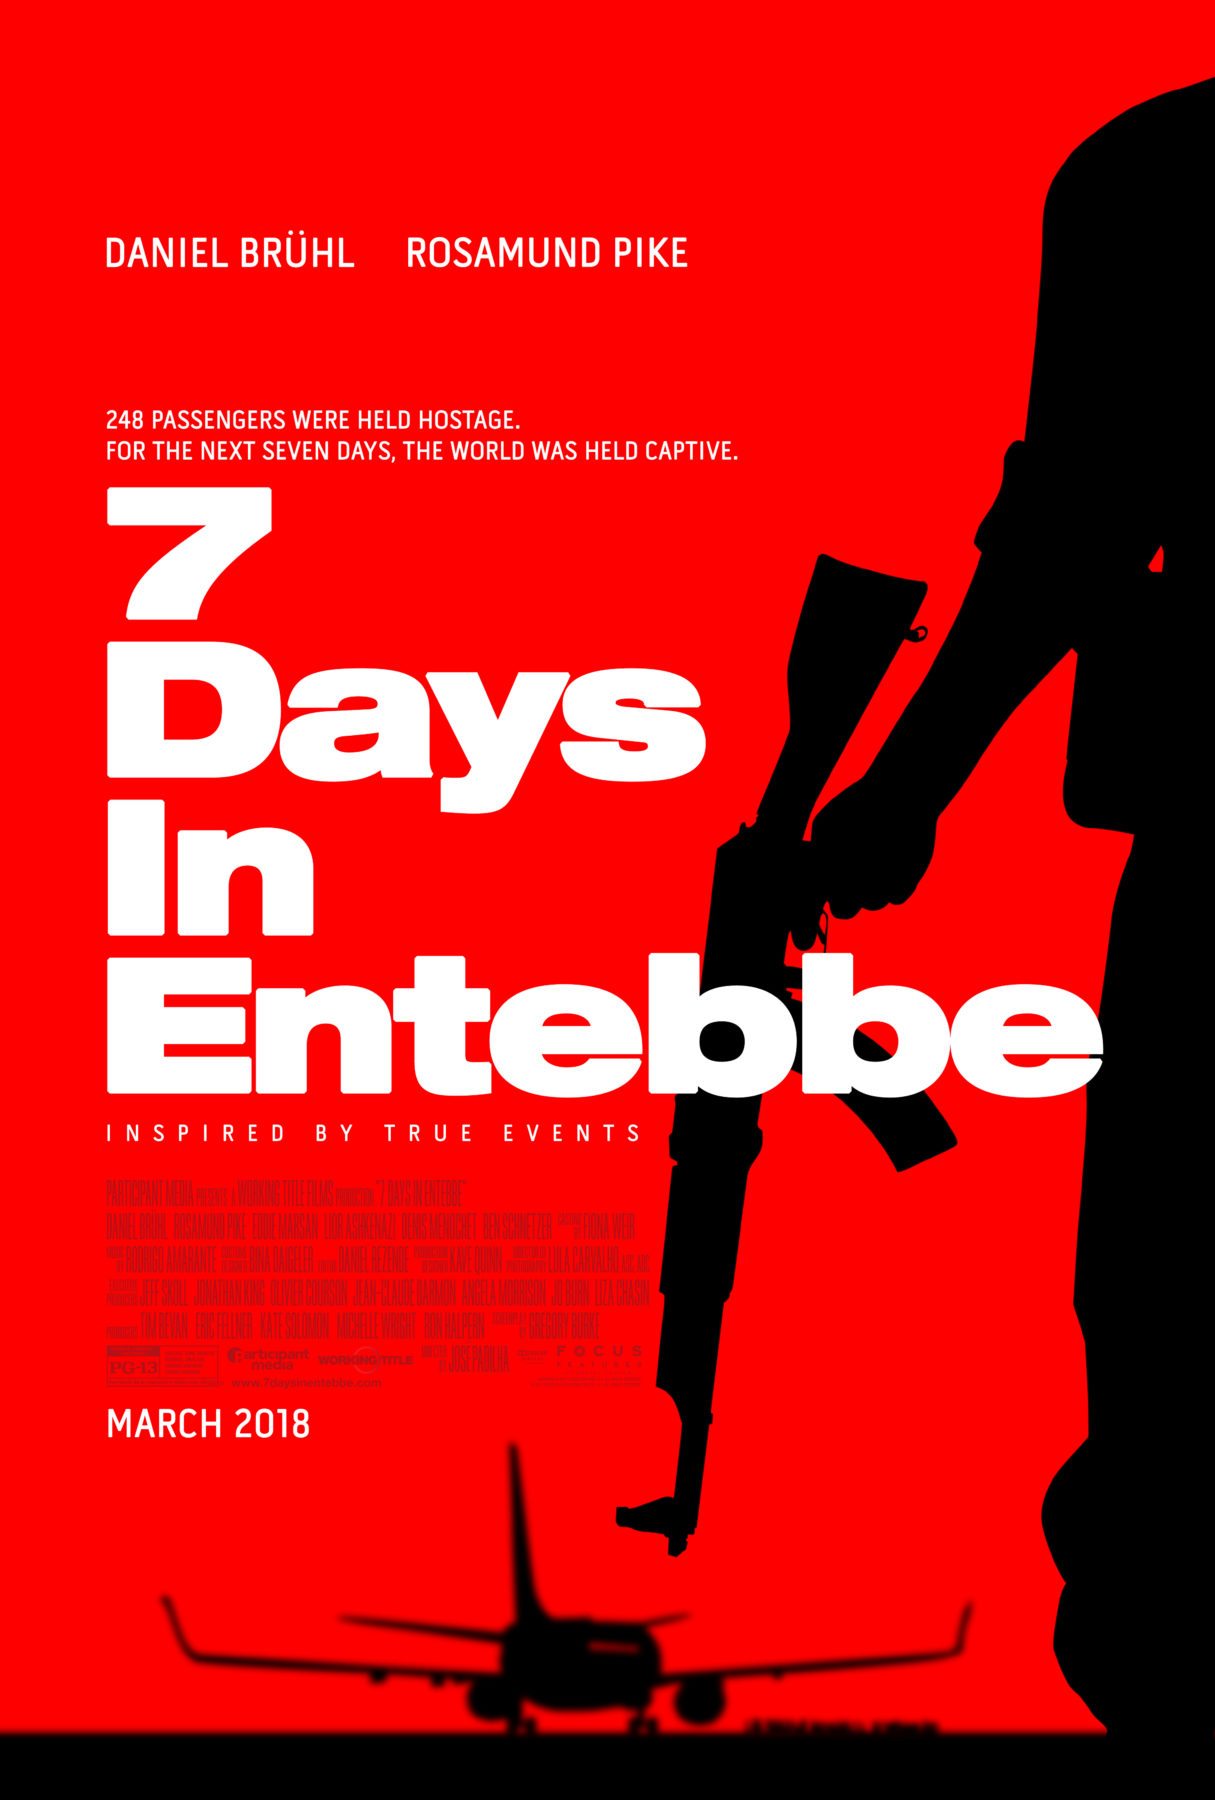 _____7 Days in Entebbe.jpg